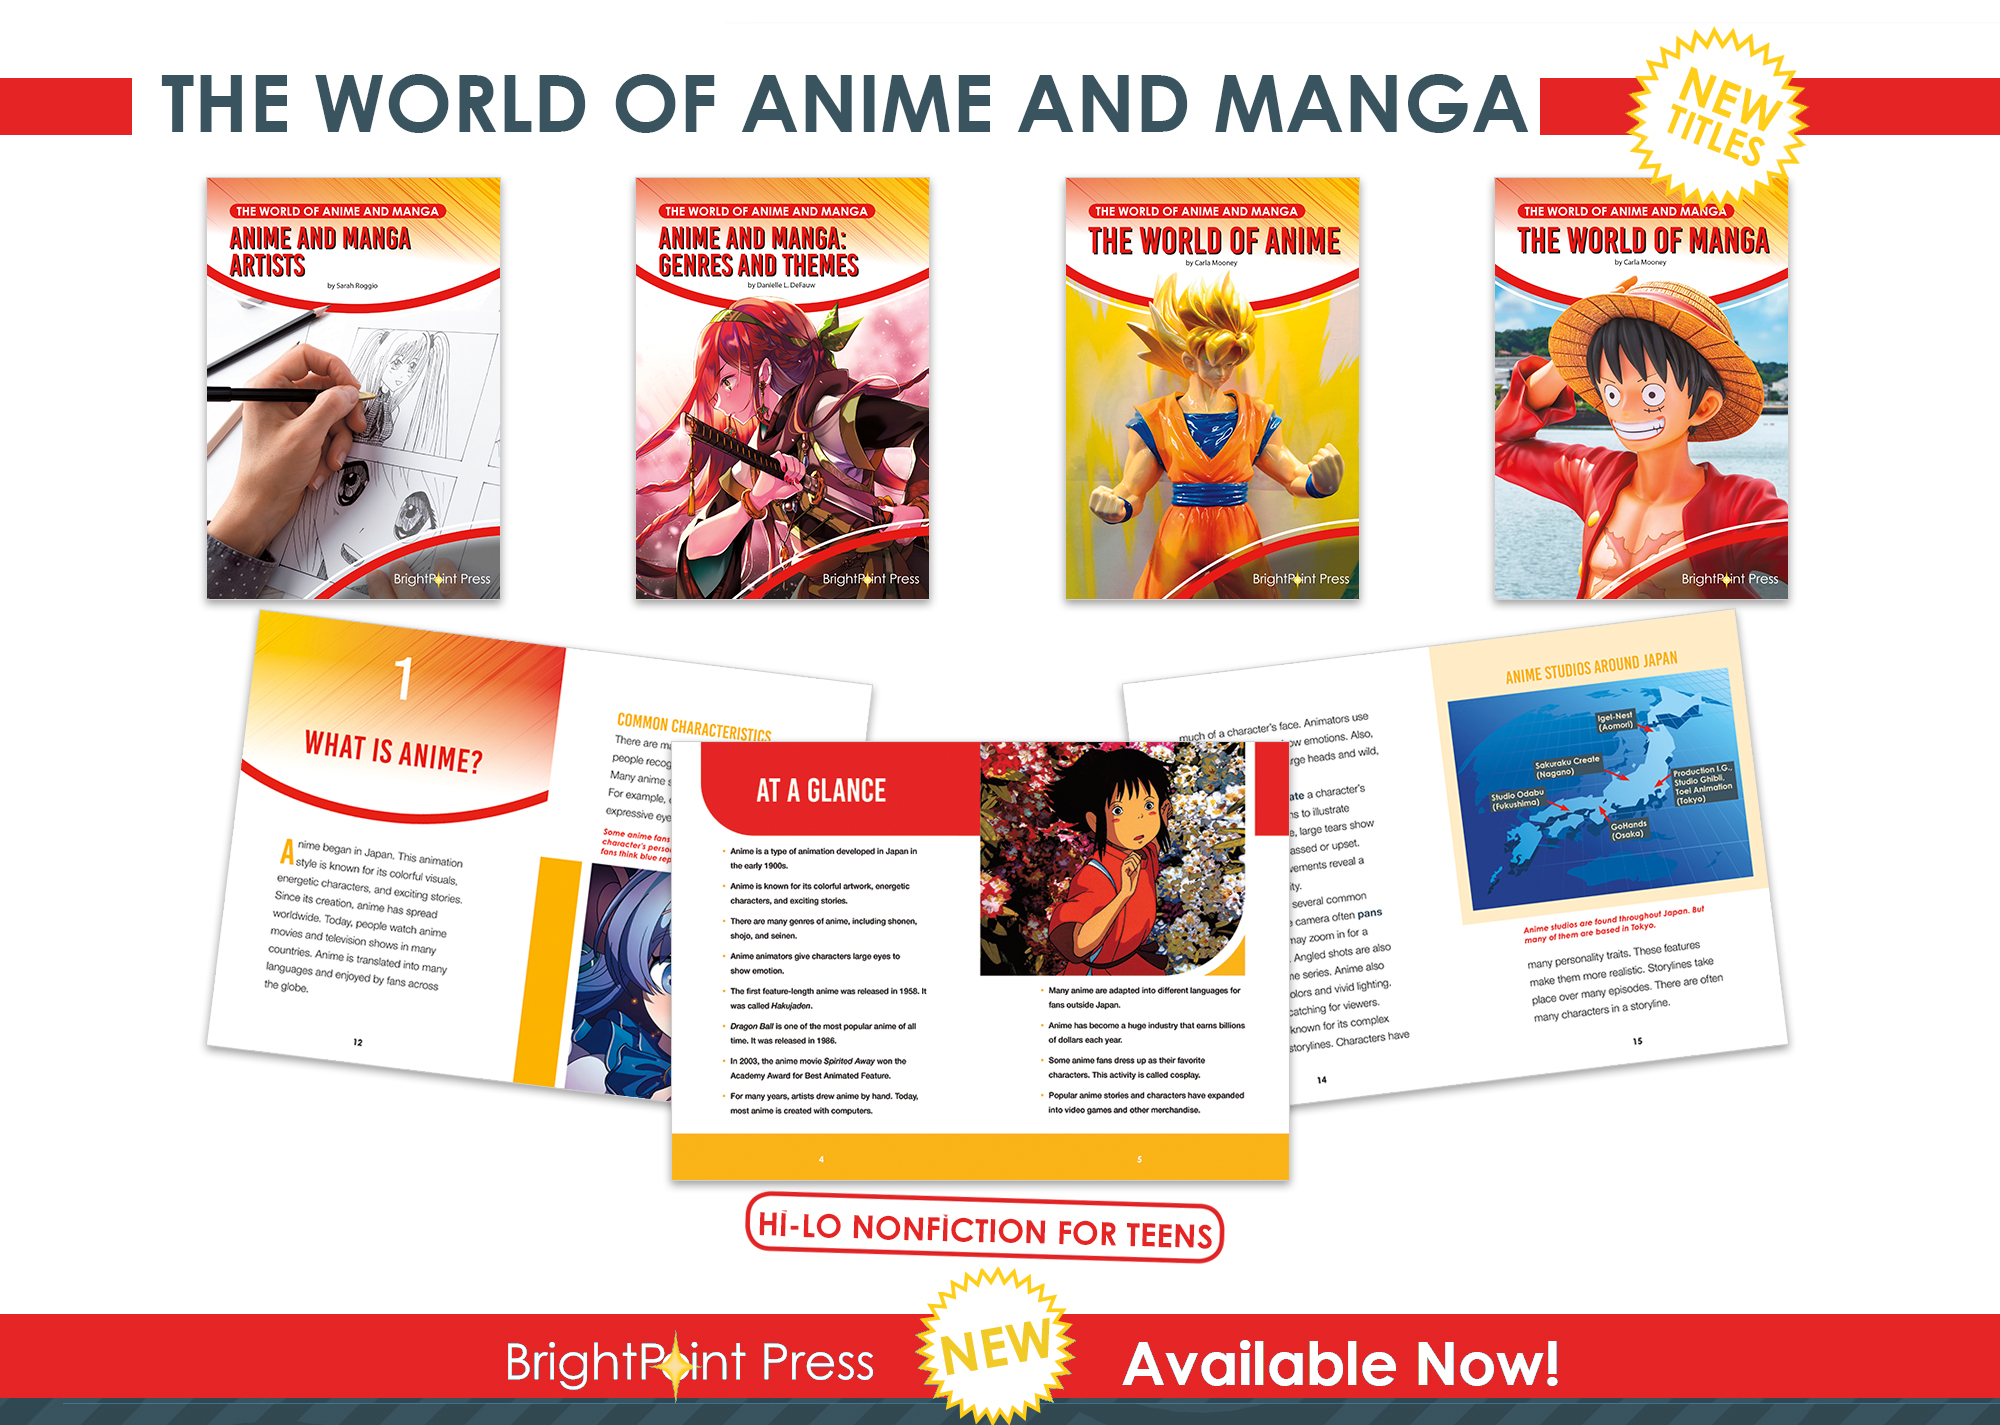 The World of Anime and Manga